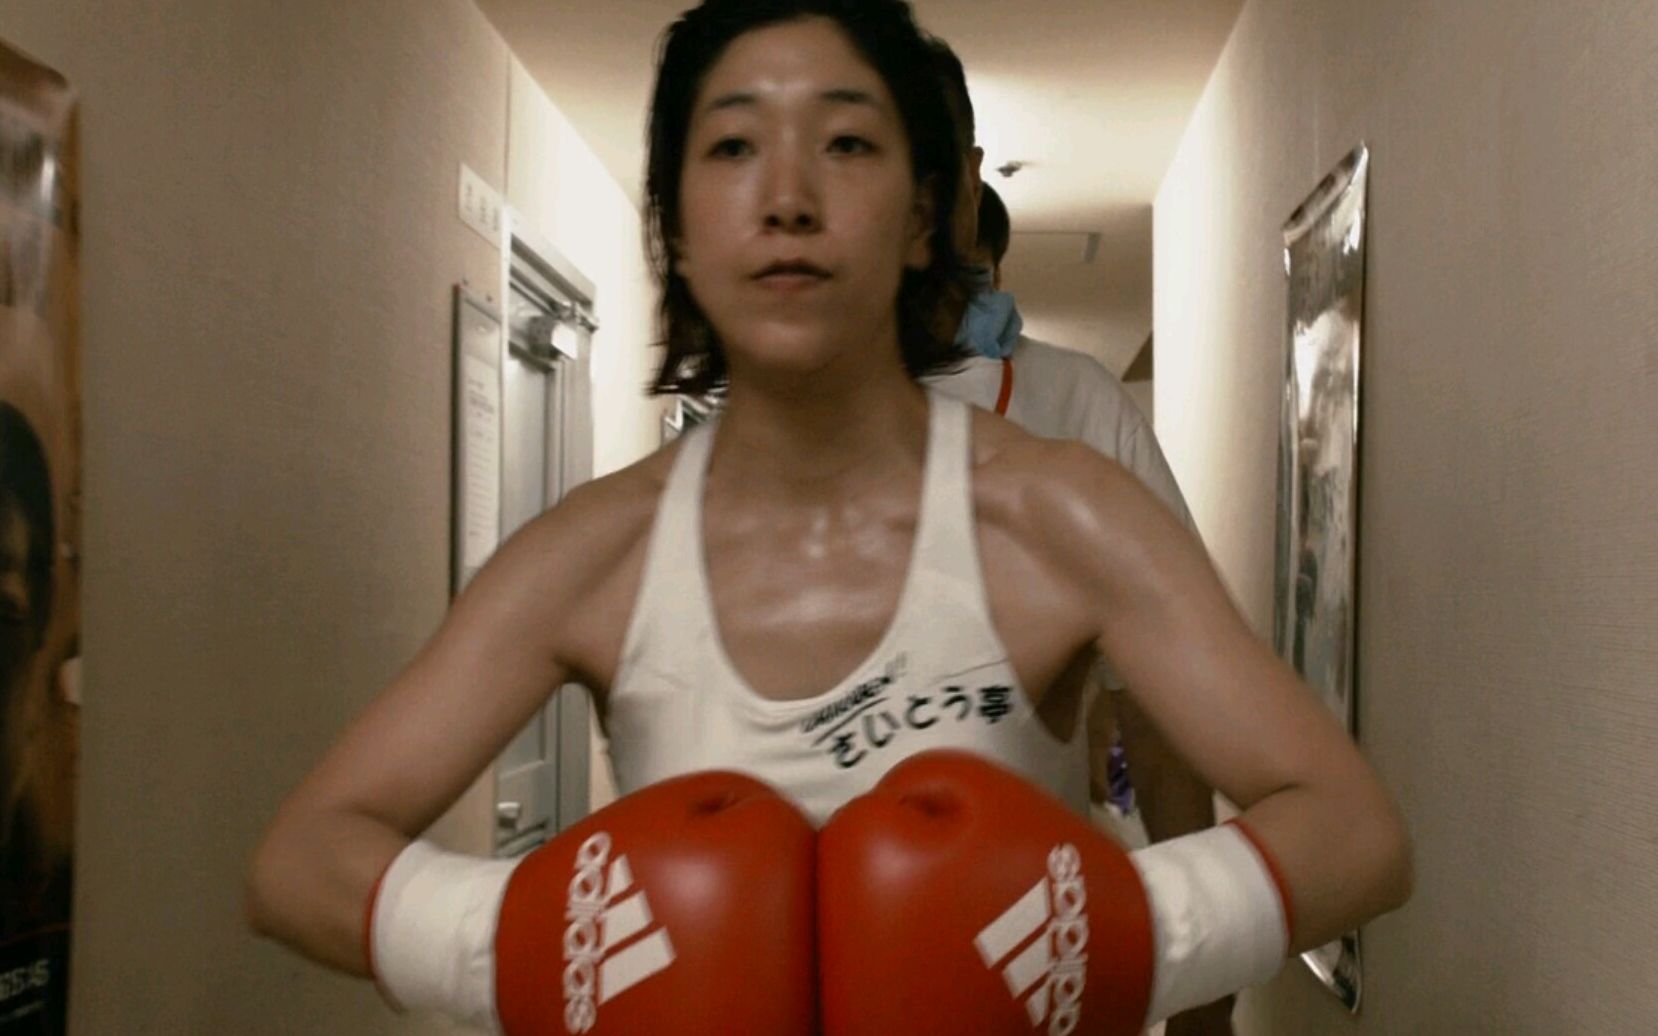 【小莫】日本超励志电影《百元之恋》。一部狠狠向生活反击的电影。